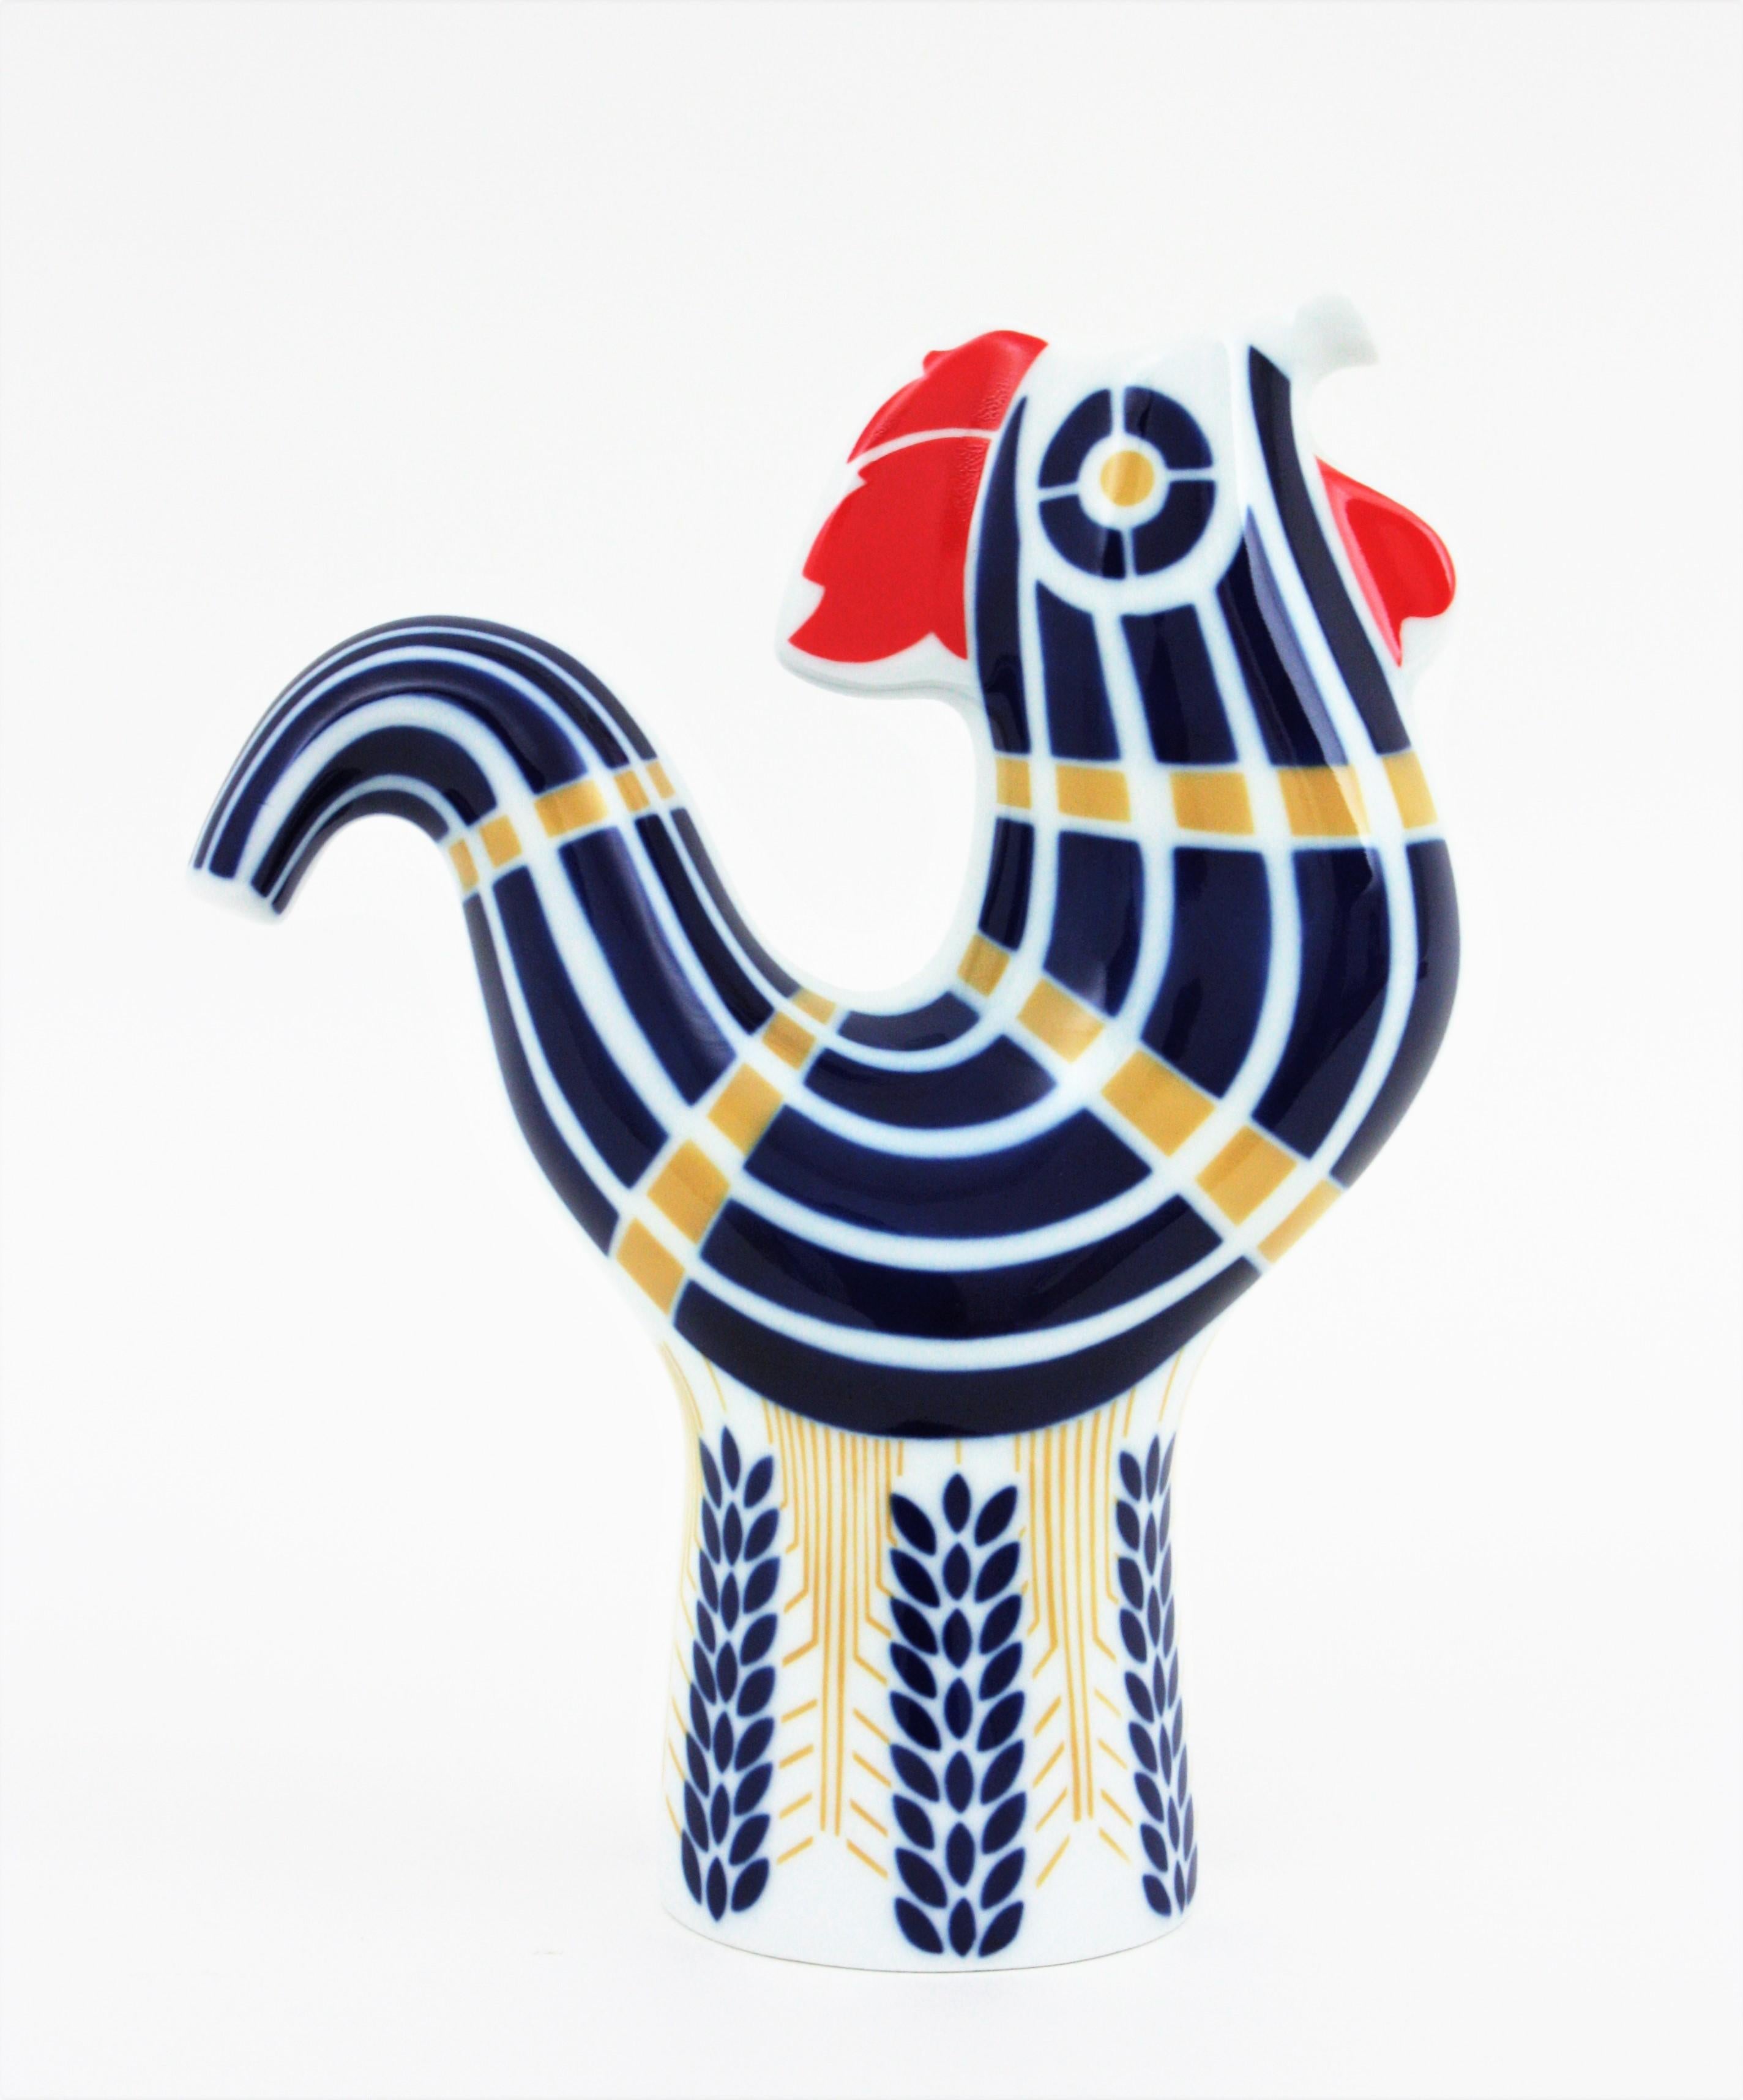 Vase / Krug mit Hahn aus Porzellan, Sargadelos, Spanien, 1950er-1960er Jahre.
Dekorative Krugvase in Form eines Hahns aus der Mitte des Jahrhunderts aus weißem und kobaltblauem Porzellan mit goldenen und roten Akzenten.
Verwenden Sie es als